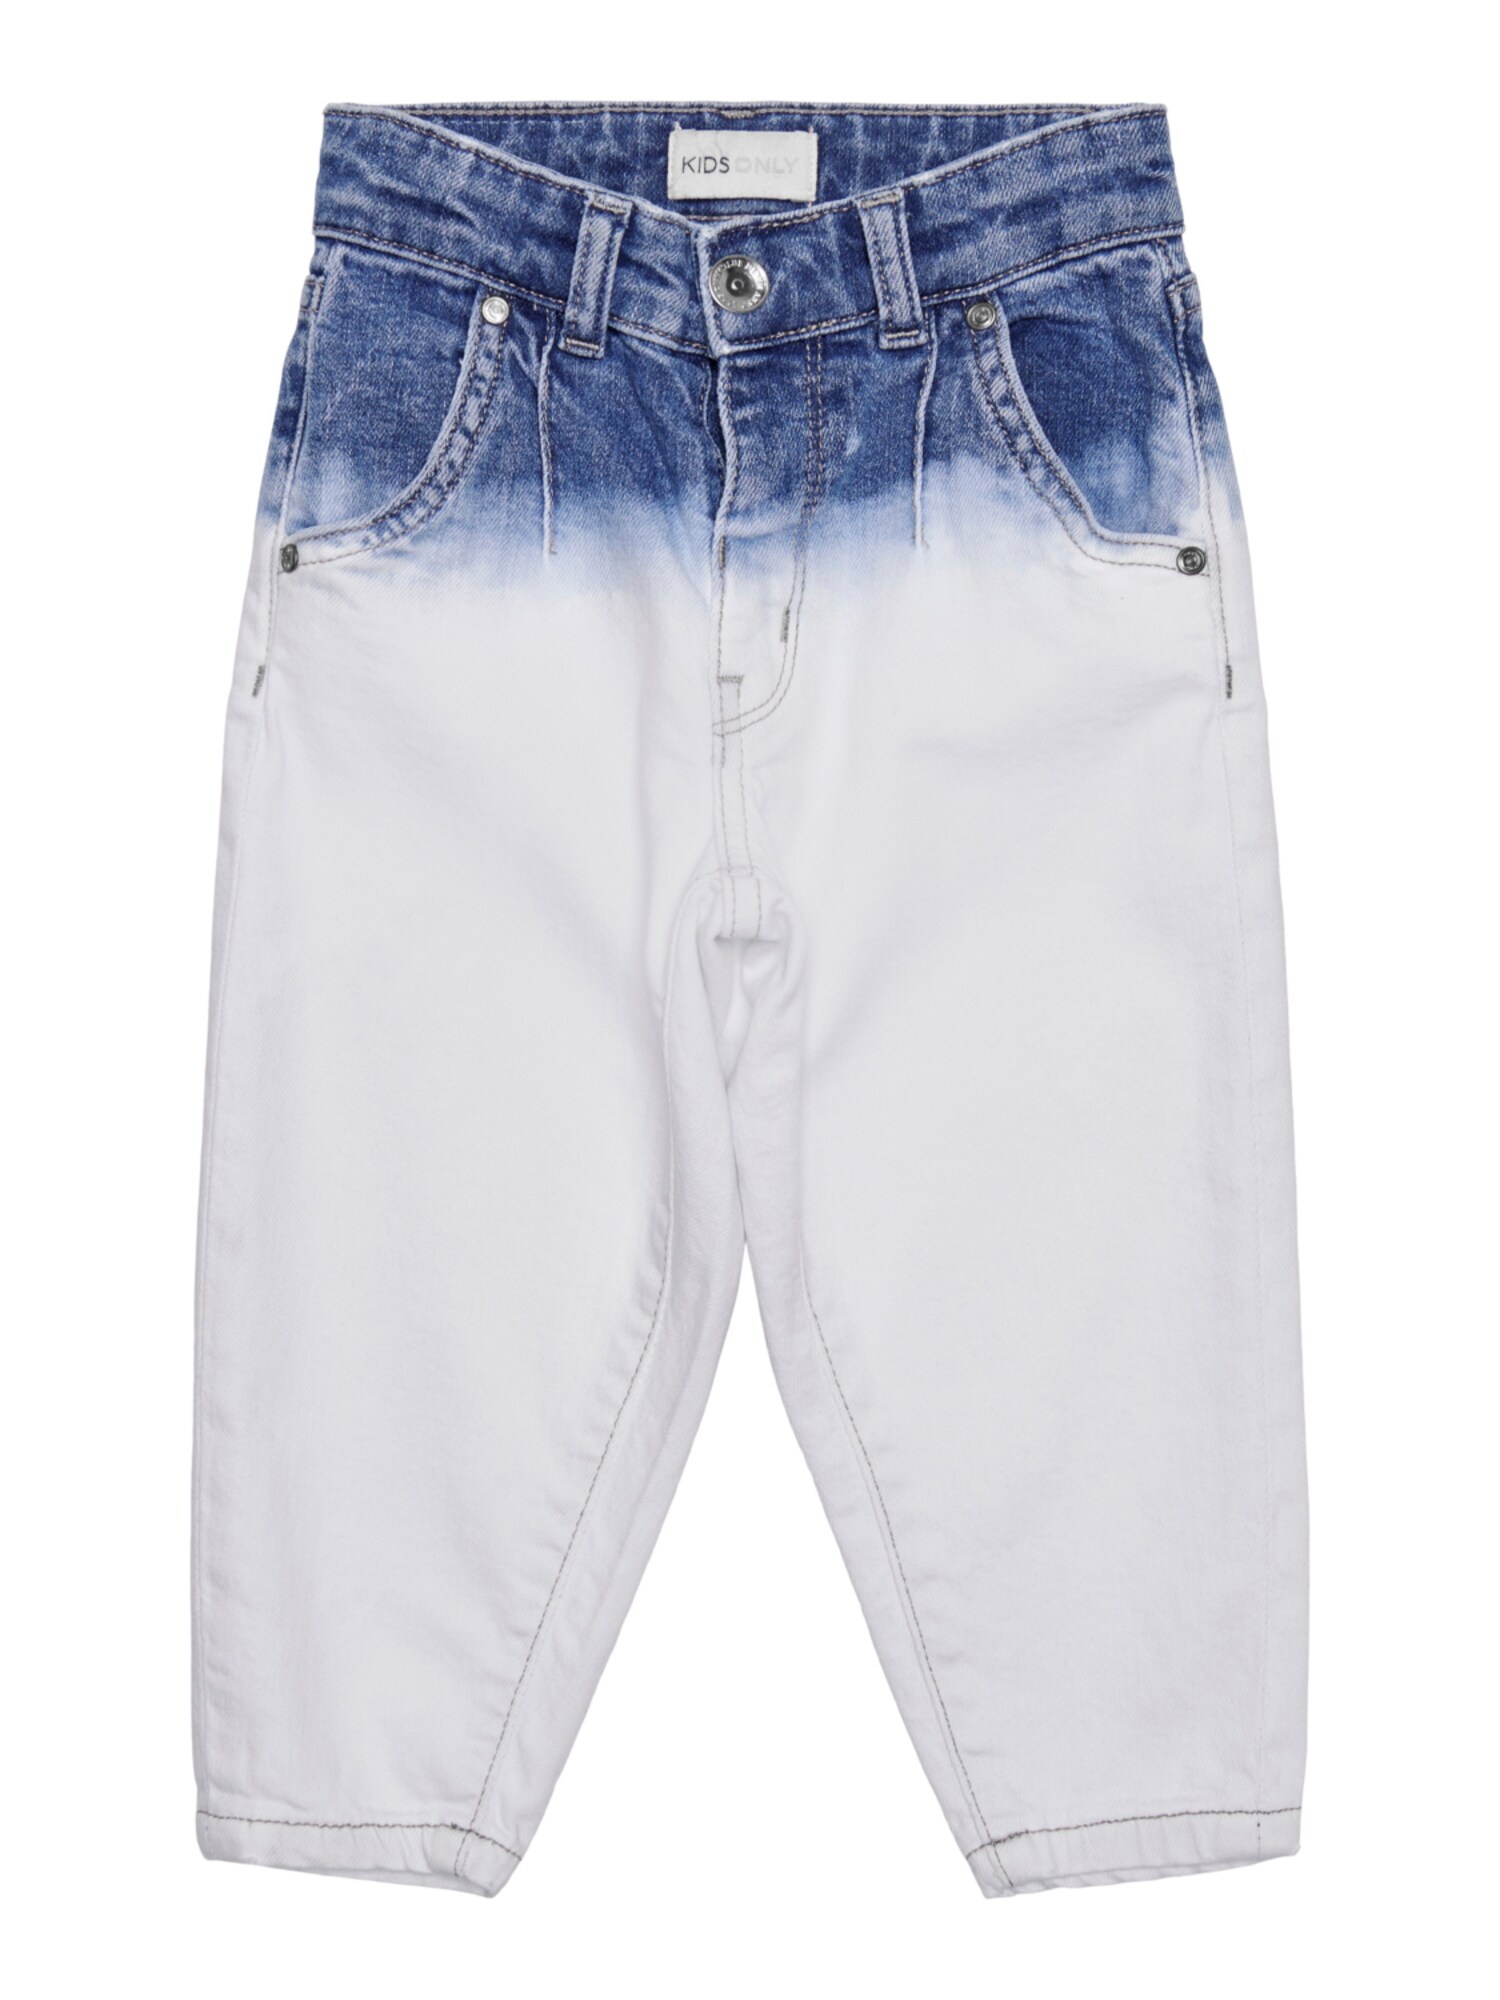 KIDS MINI GIRL Džinsai tamsiai (džinso) mėlyna / balto džinso spalva